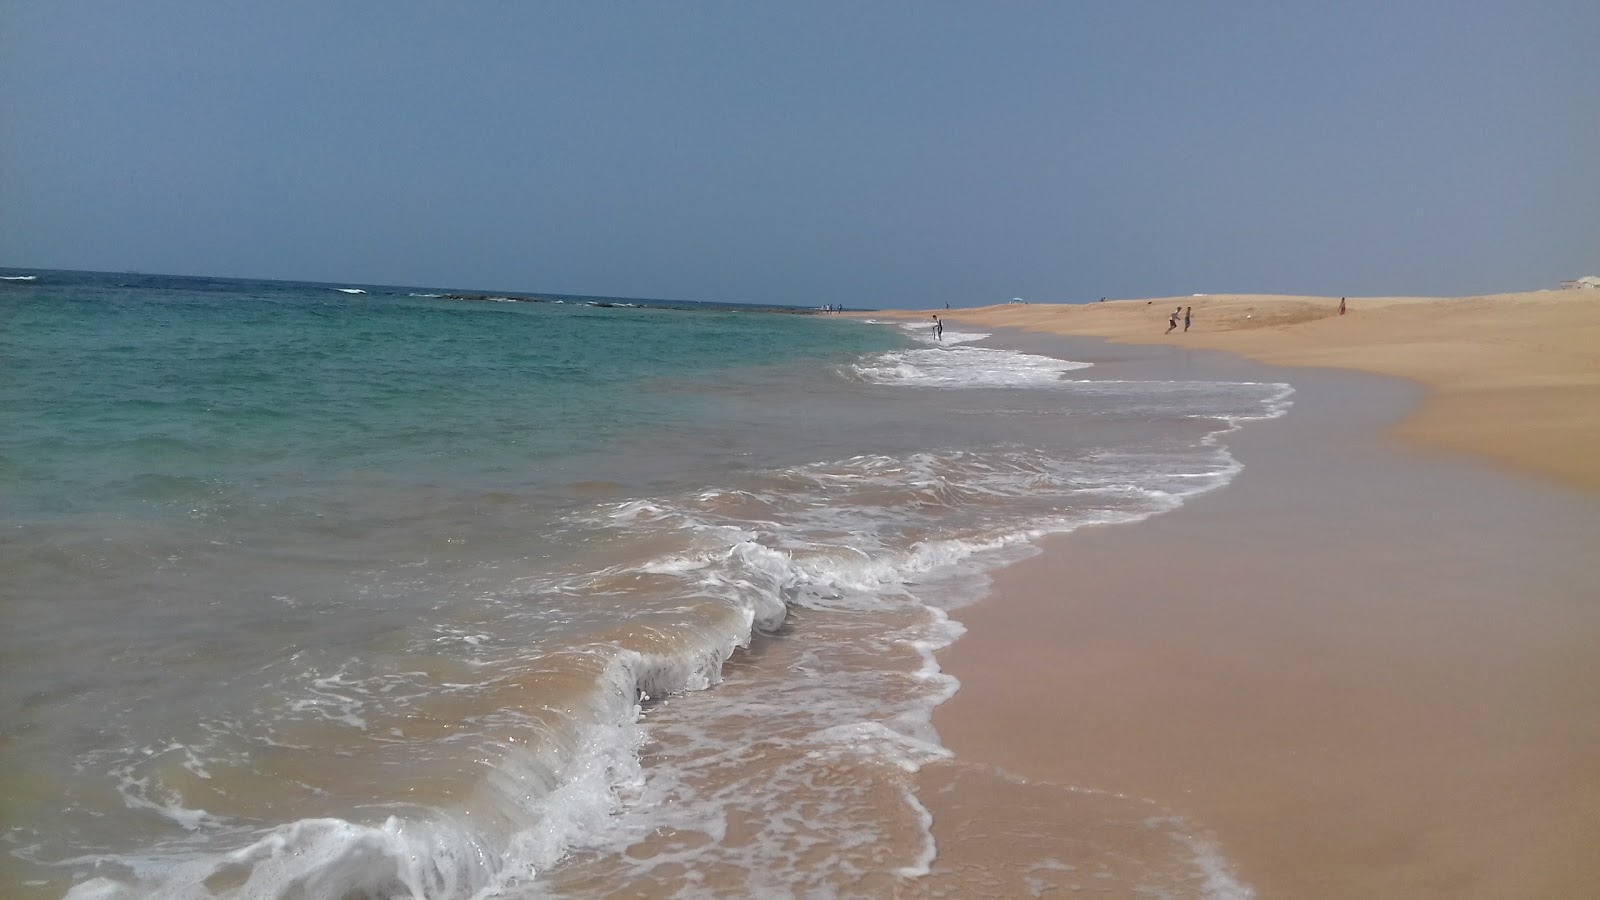 Sidi Abed Beach'in fotoğrafı geniş ile birlikte